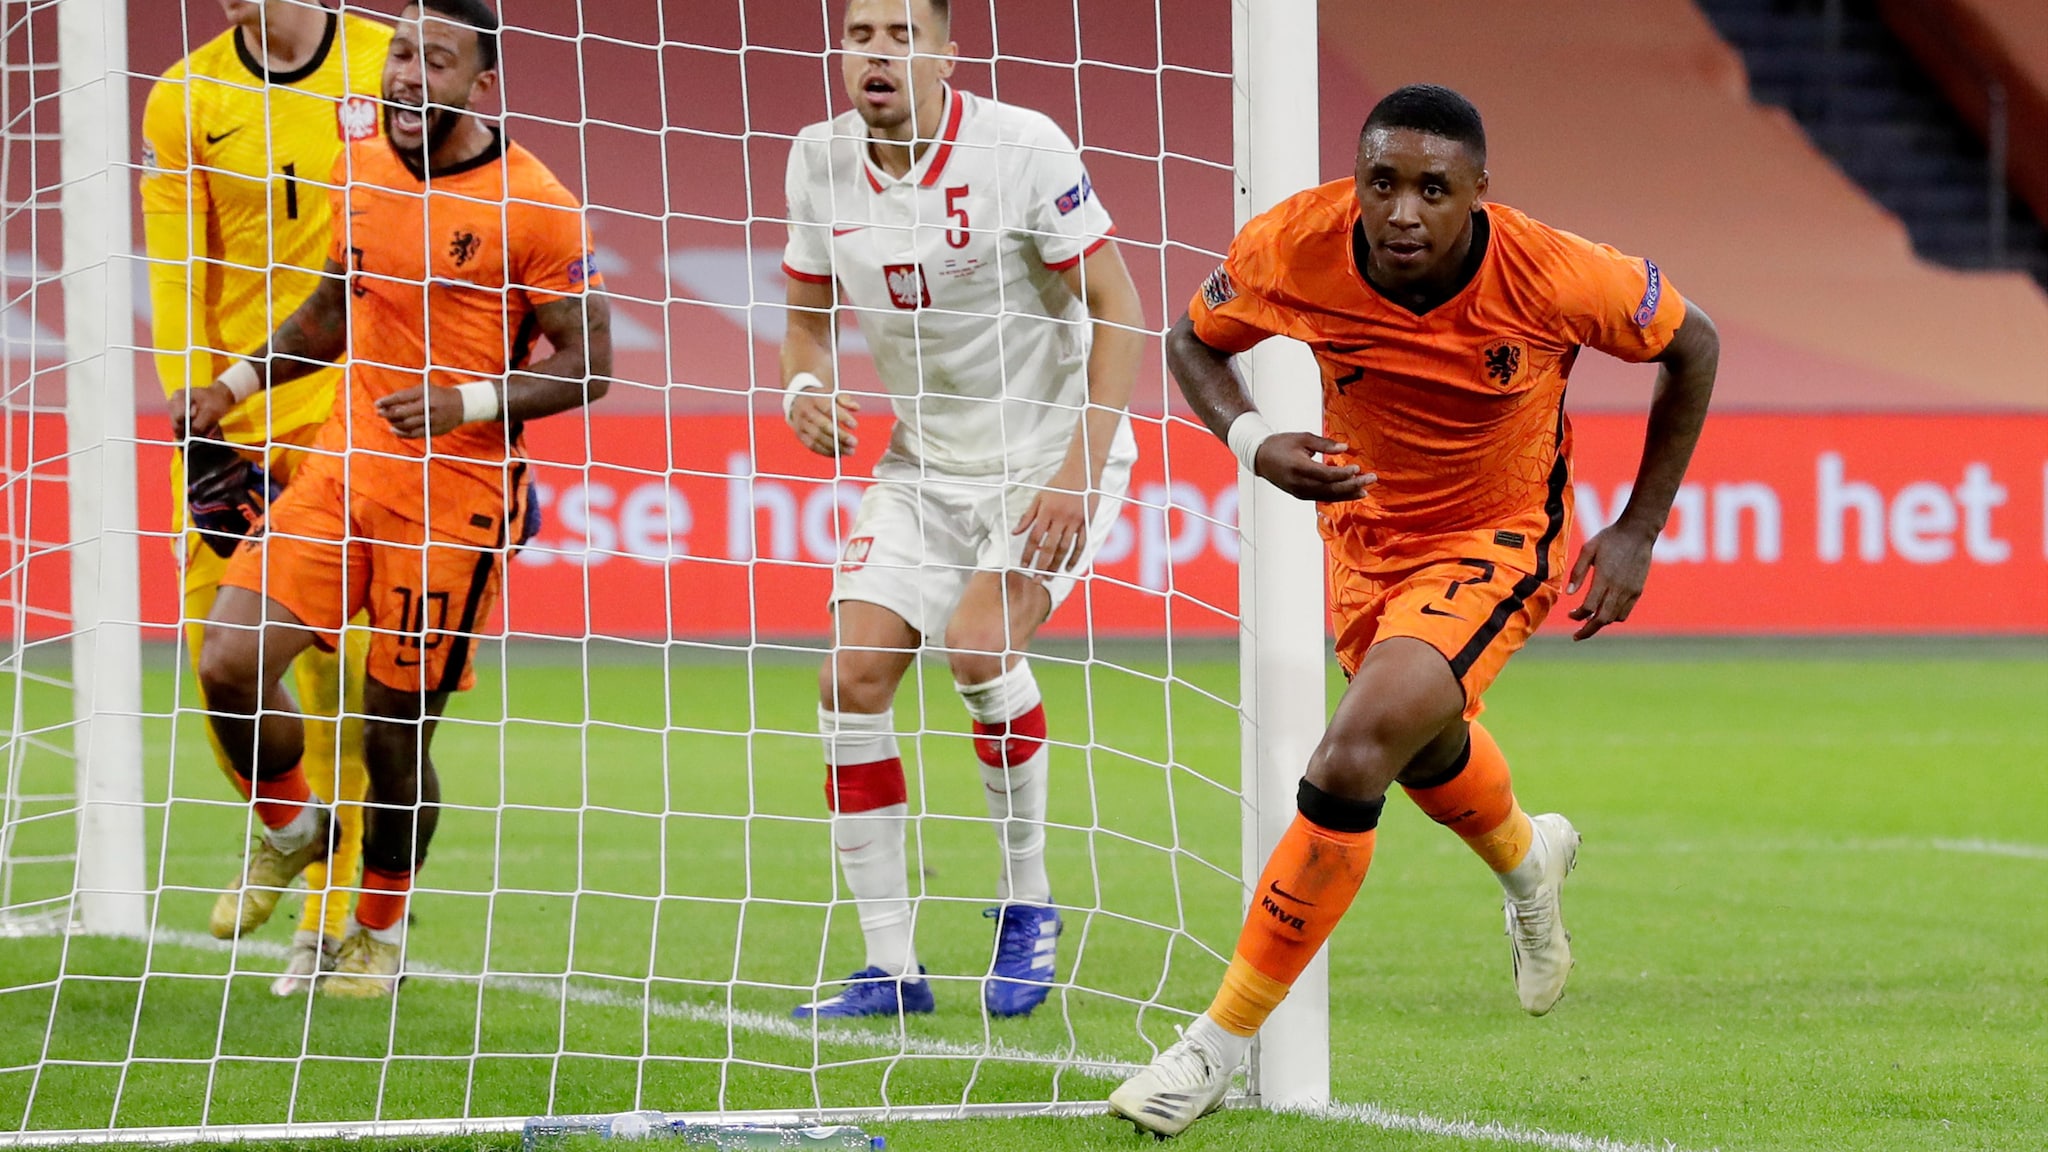 Crónica Holanda - Polonia 1-0: Bergwijn sentencia | UEFA Nations League |  UEFA.com